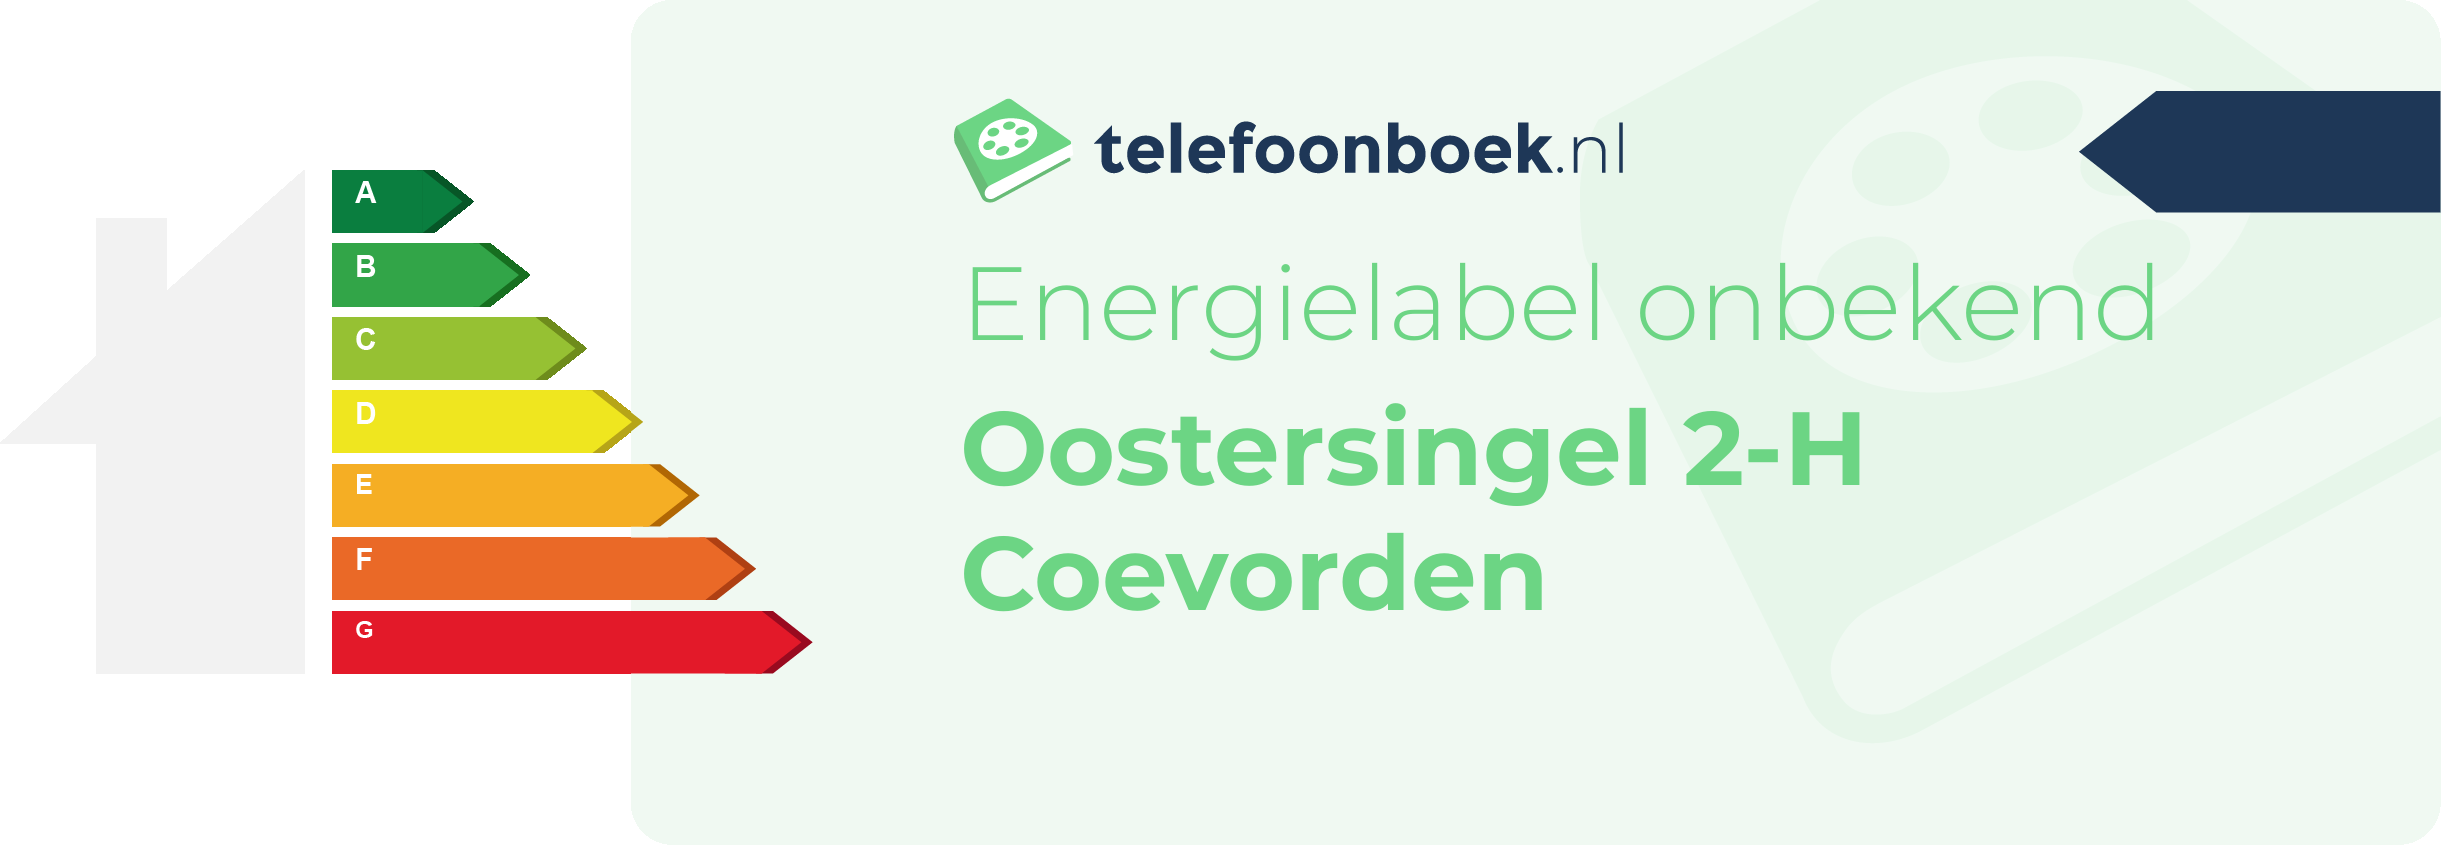 Energielabel Oostersingel 2-H Coevorden